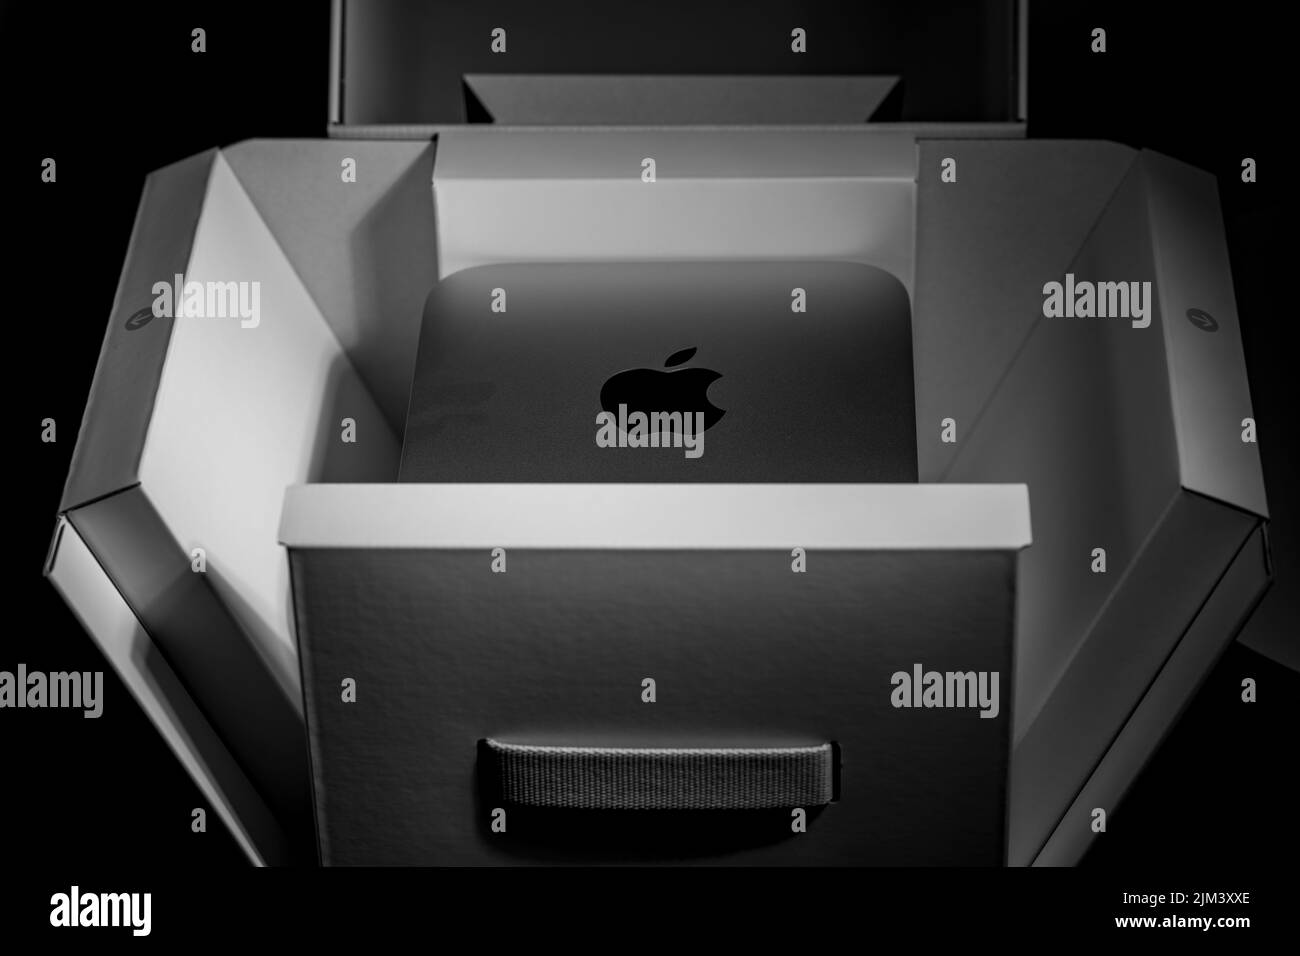 Unboxing-Paket Low-Key-Standzeit der modernen neuen Desktop-Computer-System mit Unternehmen Logo erscheint Stockfoto